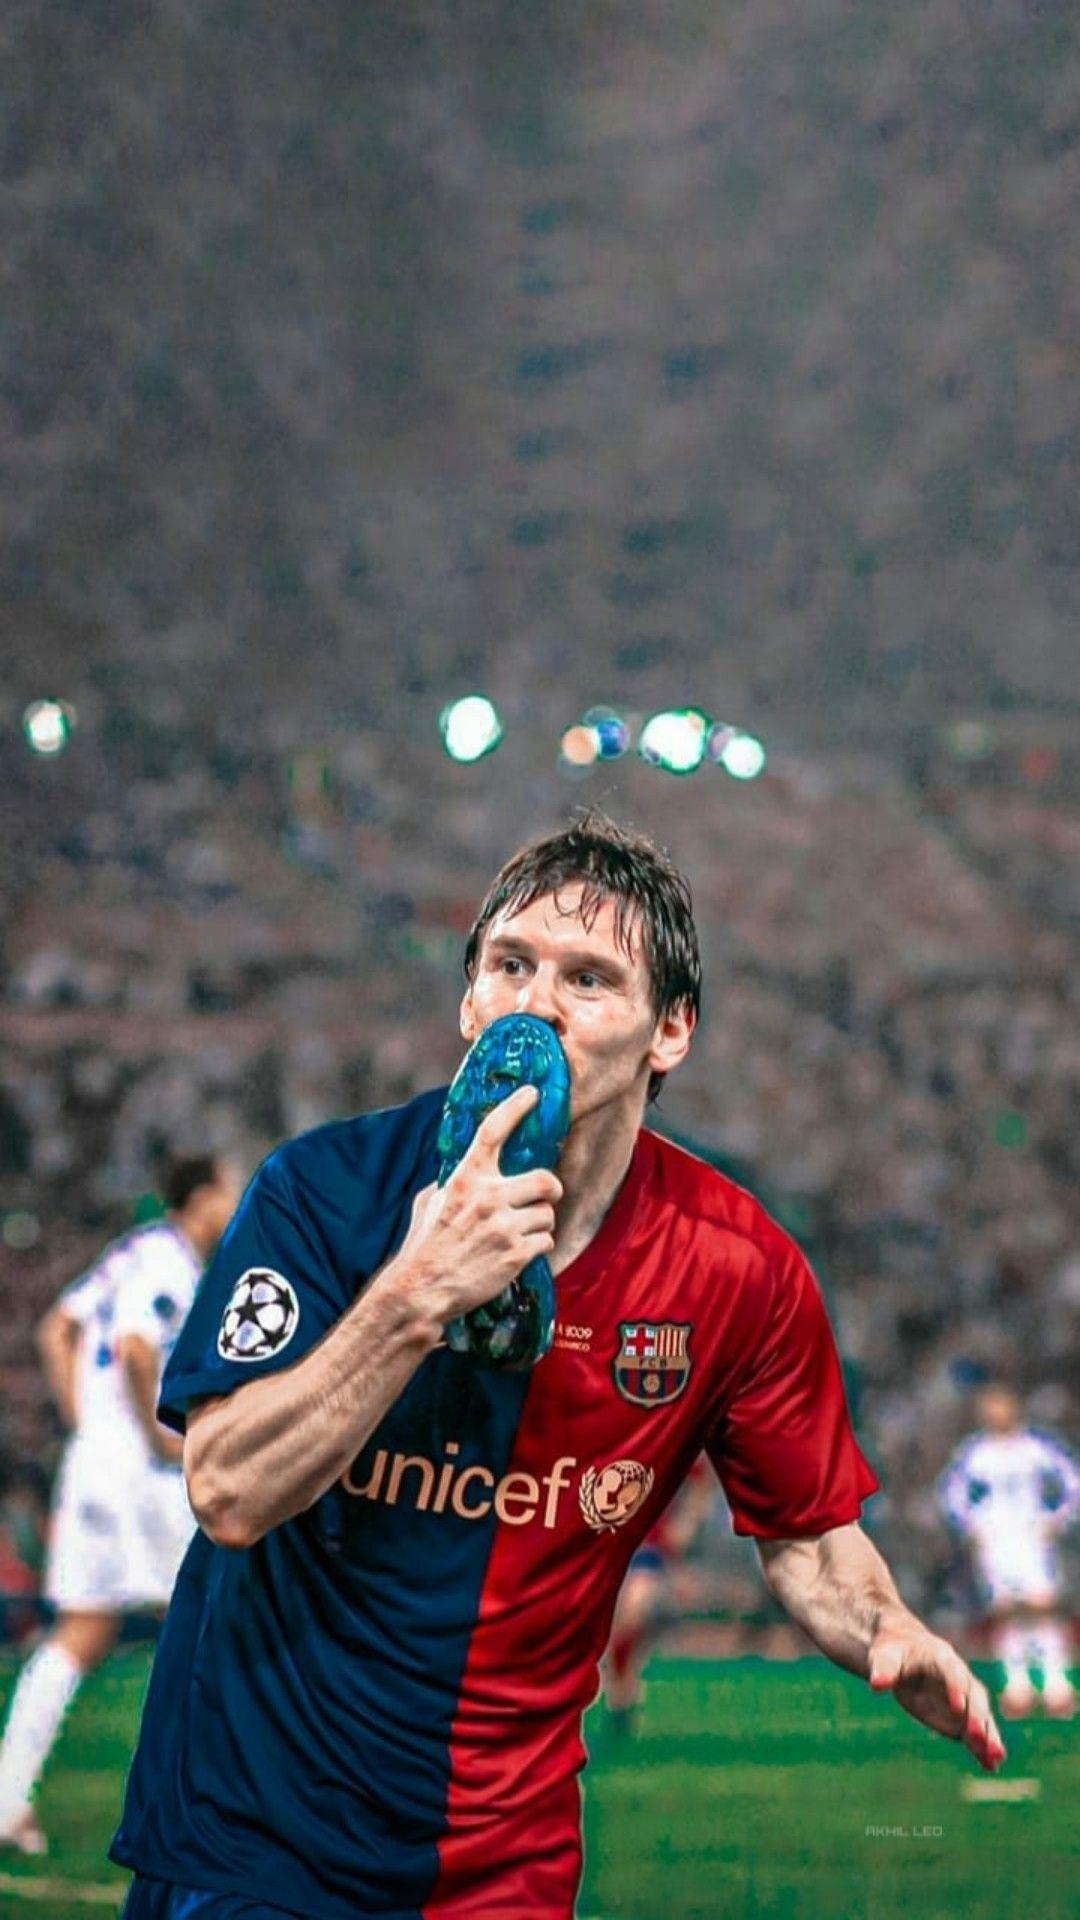 Hình nền Messi năm 2009 đầy cảm hứng này sẽ mang lại cho bạn những kỷ niệm đáng nhớ về sự nghiệp bóng đá của Messi. Đừng bỏ lỡ cơ hội để trang trí điện thoại hoặc máy tính của bạn với bức hình tuyệt đẹp này.